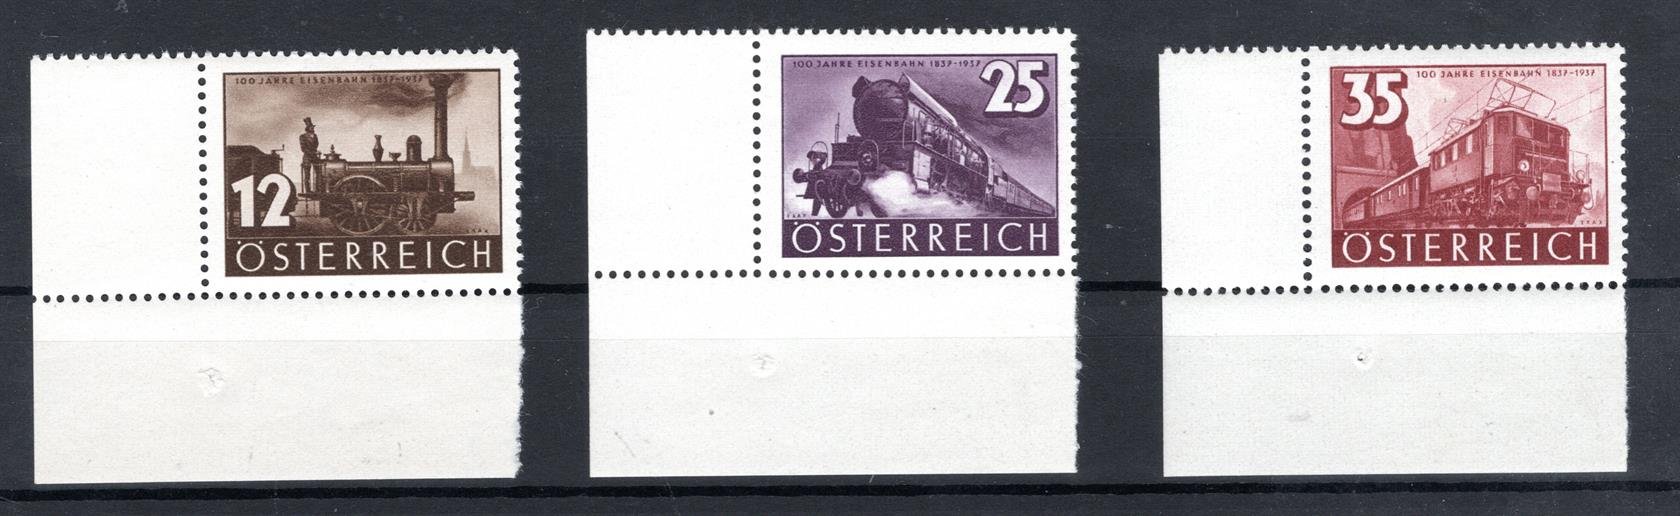 Rakousko - Mi. 646 - 8, rohové, železnice, kat. 18,- Eu